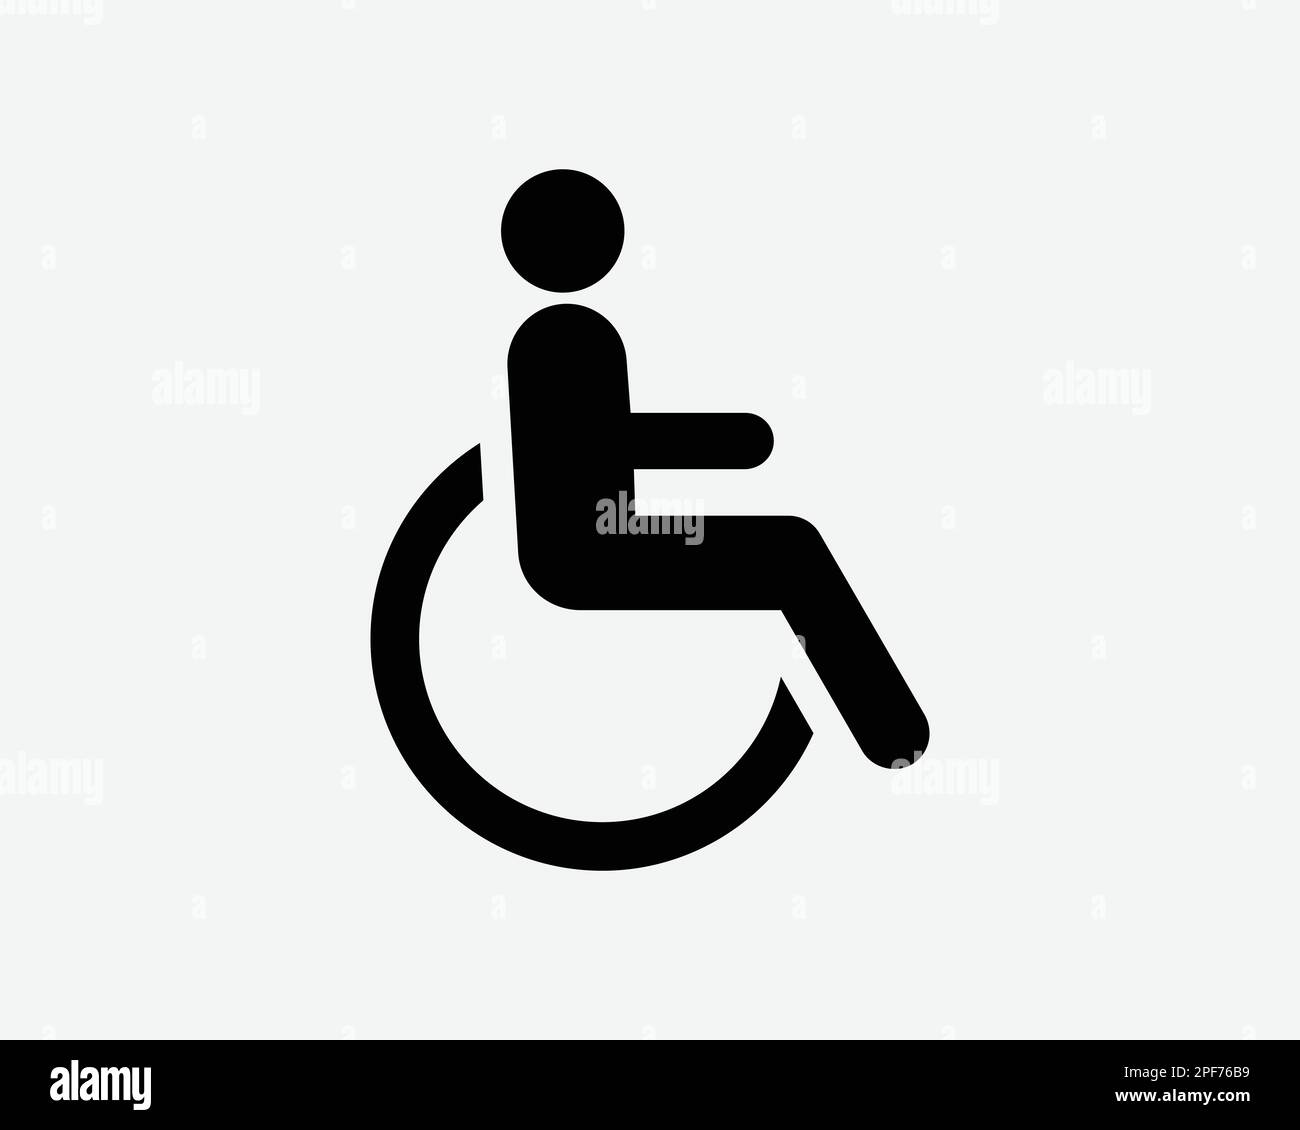 Behindertensymbol Behindertensymbol Behindertengerechte Menschen Rollstuhl Schwarz Weiß Silhouettenzeichen Grafik Clipart Artwork Piktogramm Vec Stock Vektor